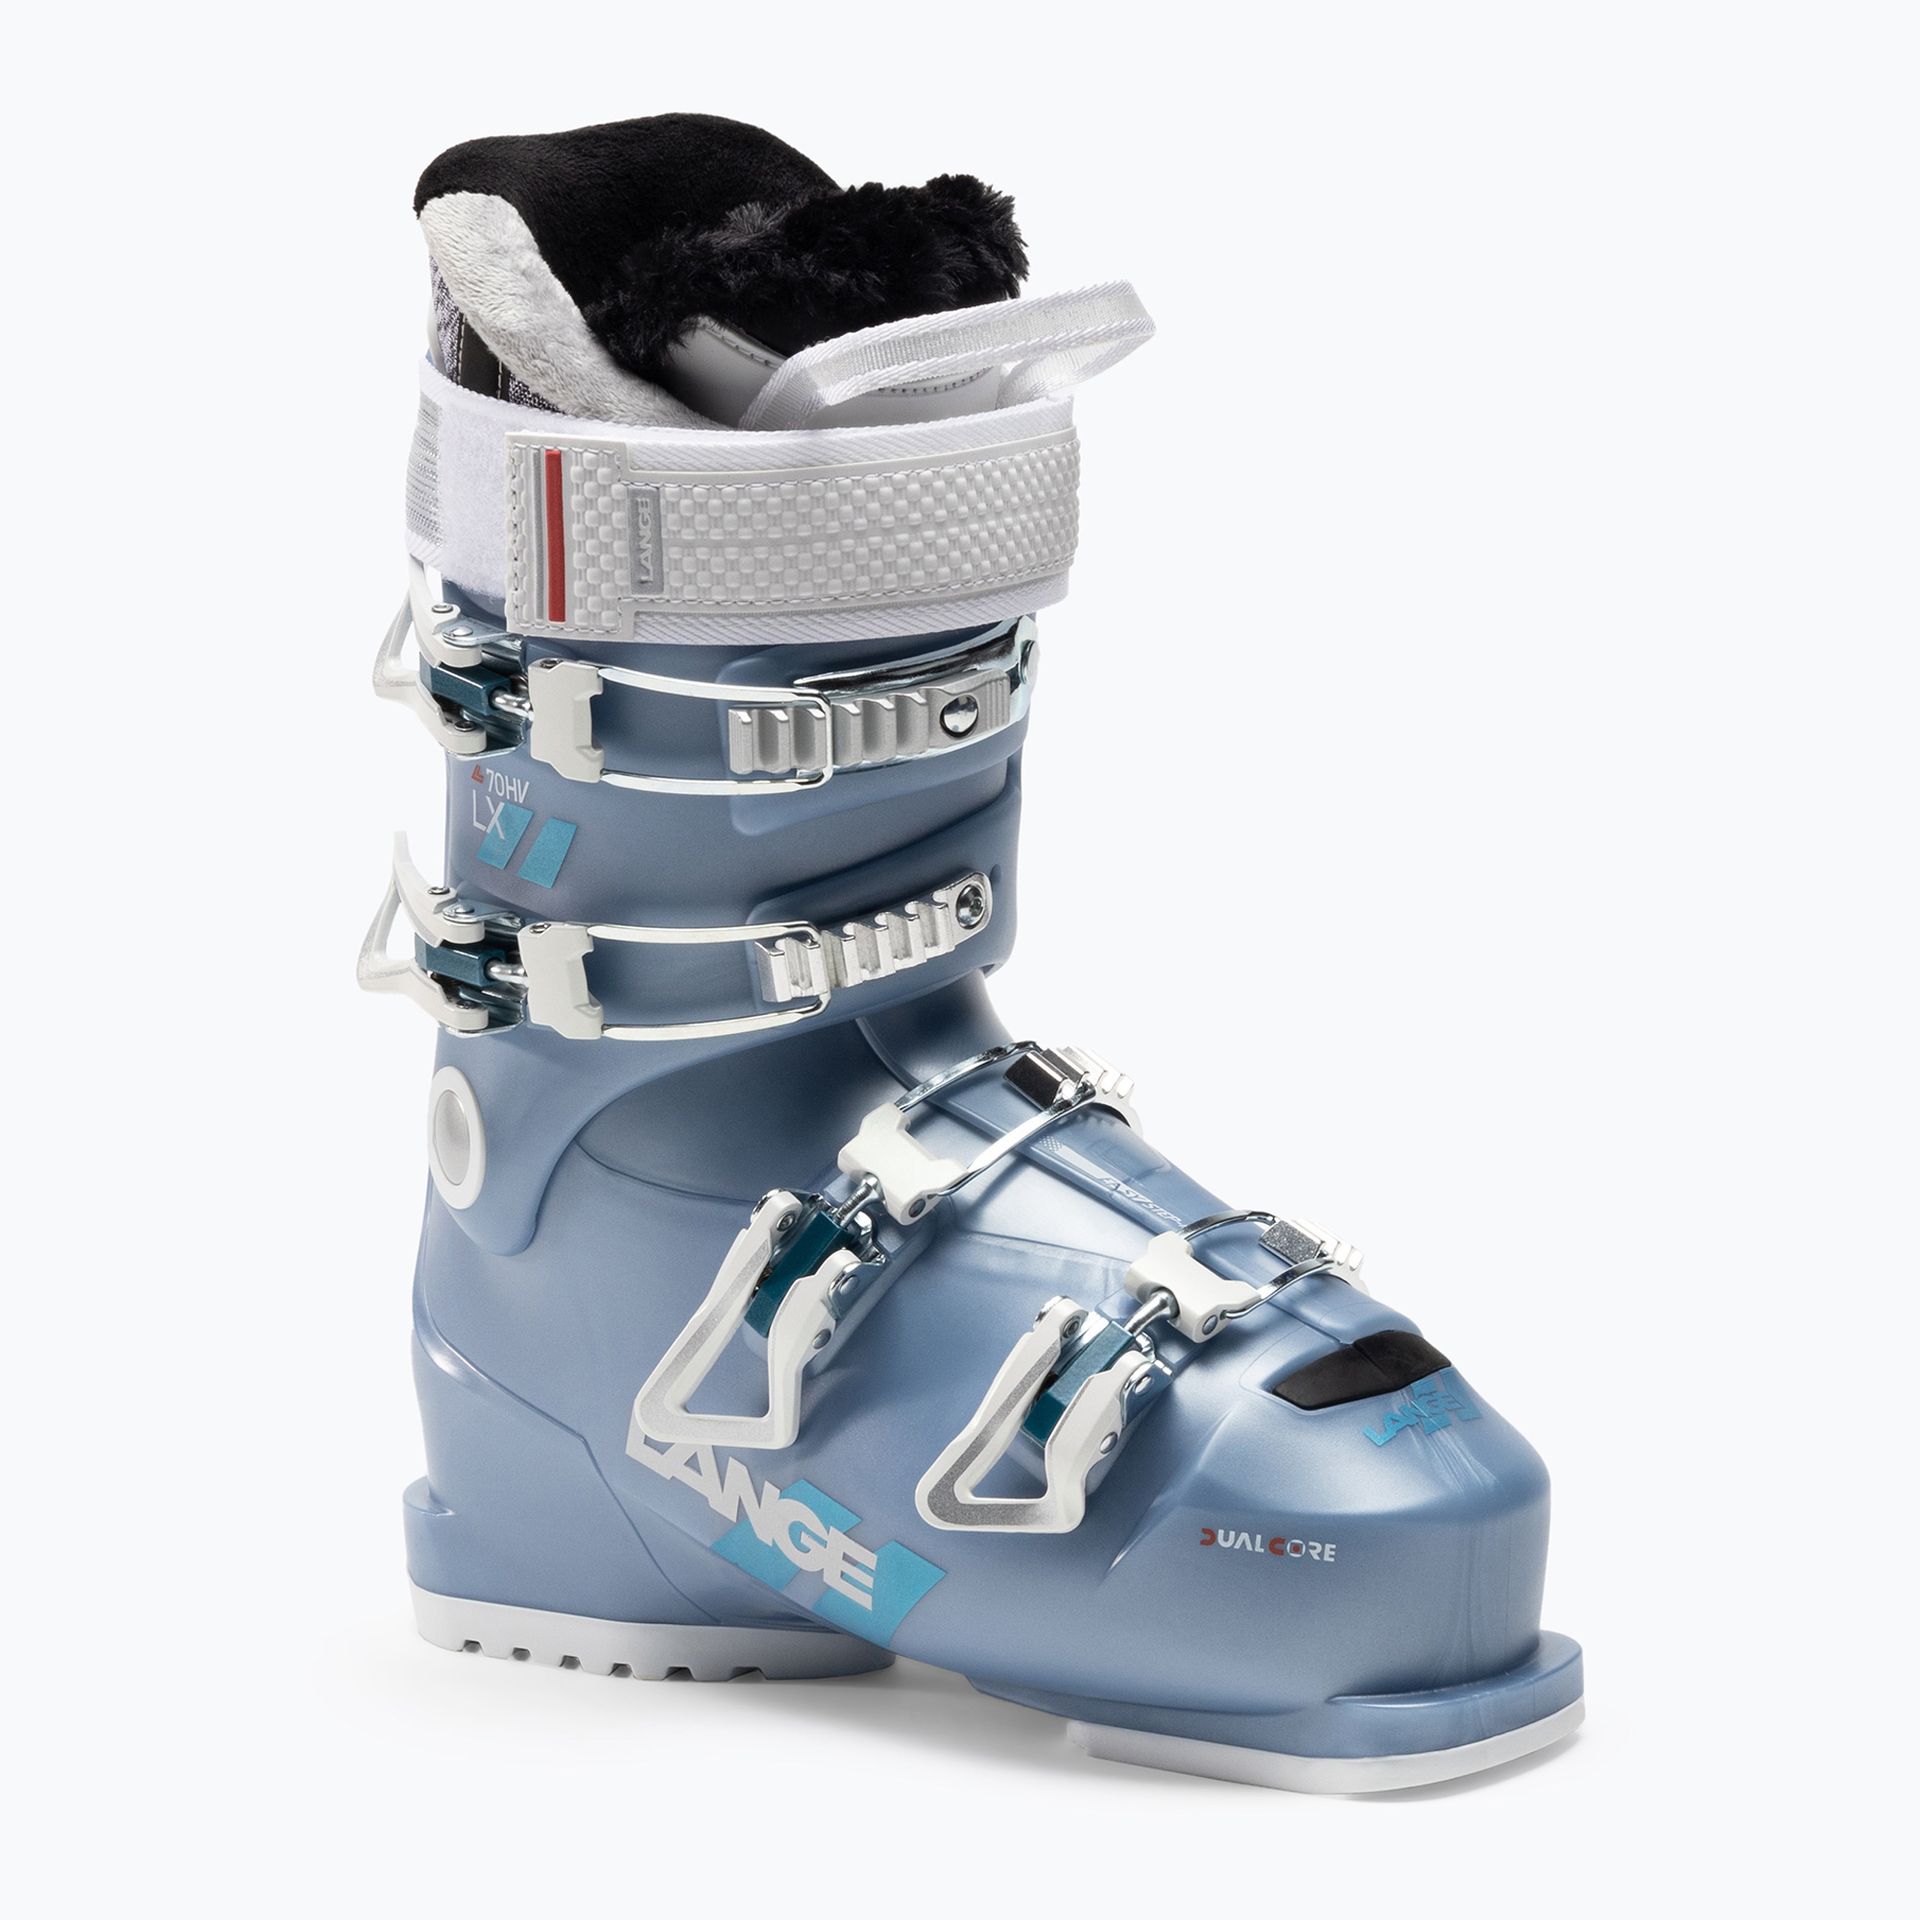 Buty narciarskie damskie Lange LX 70 W HV niebieskie LBL6260-235  24.0 cm